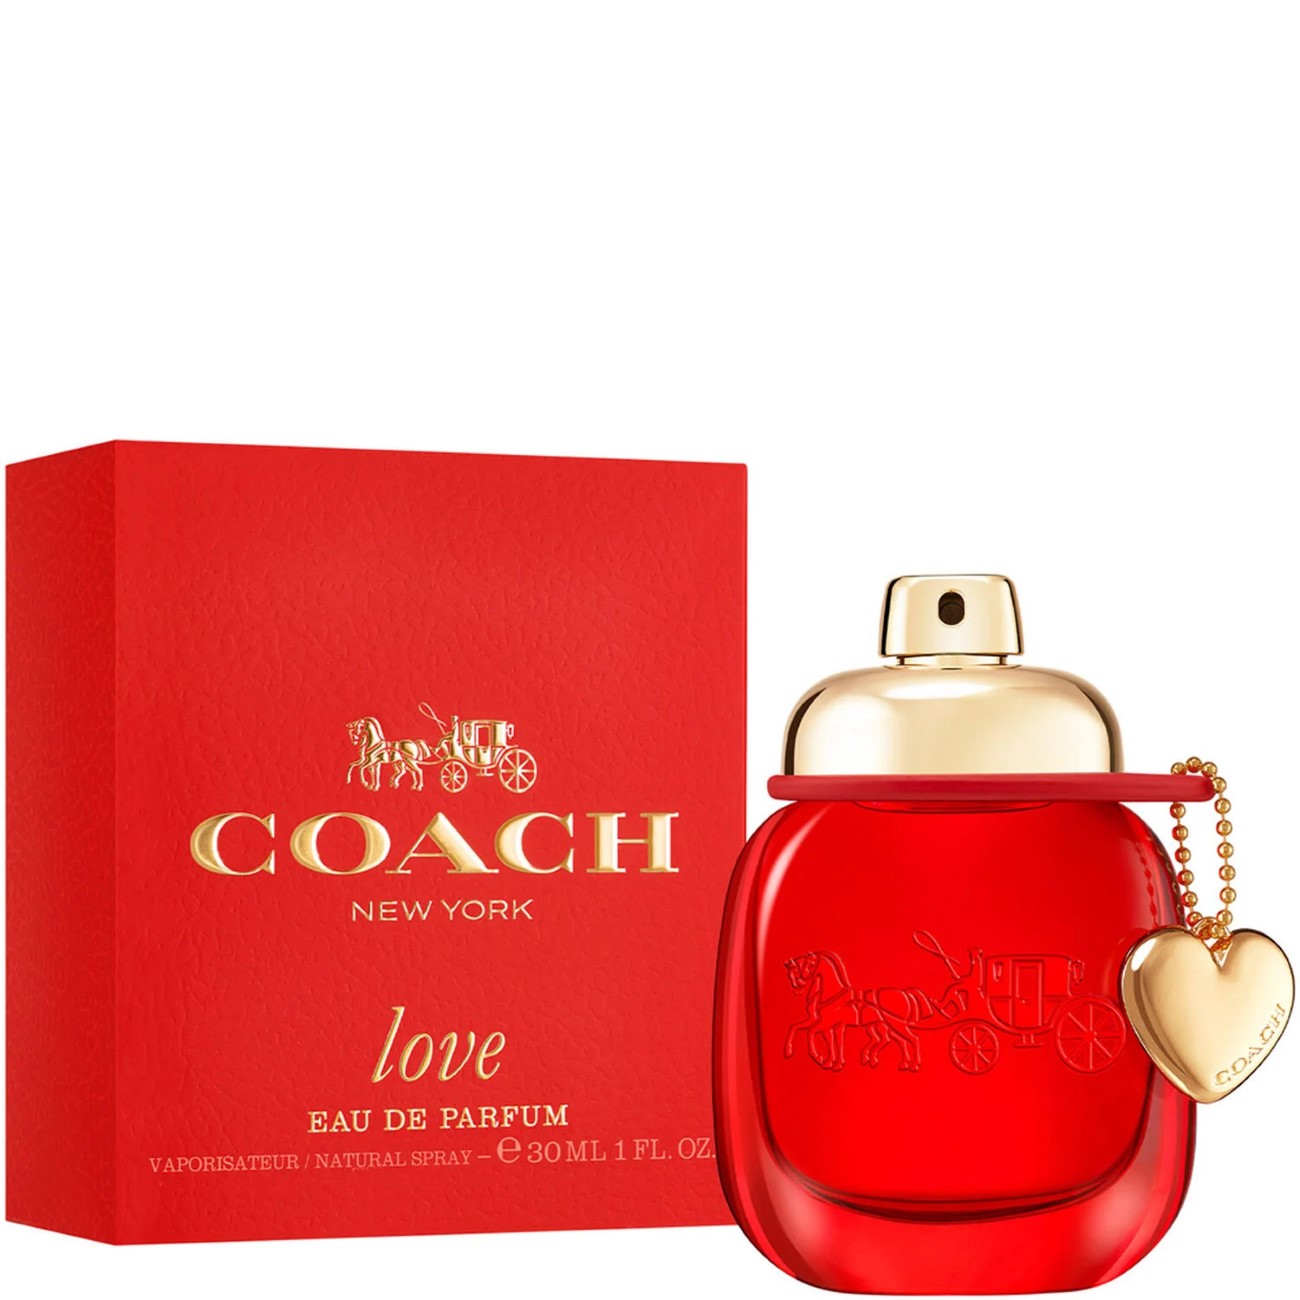 Coach Love Eau de Parfum for women captures the essence of modern romance